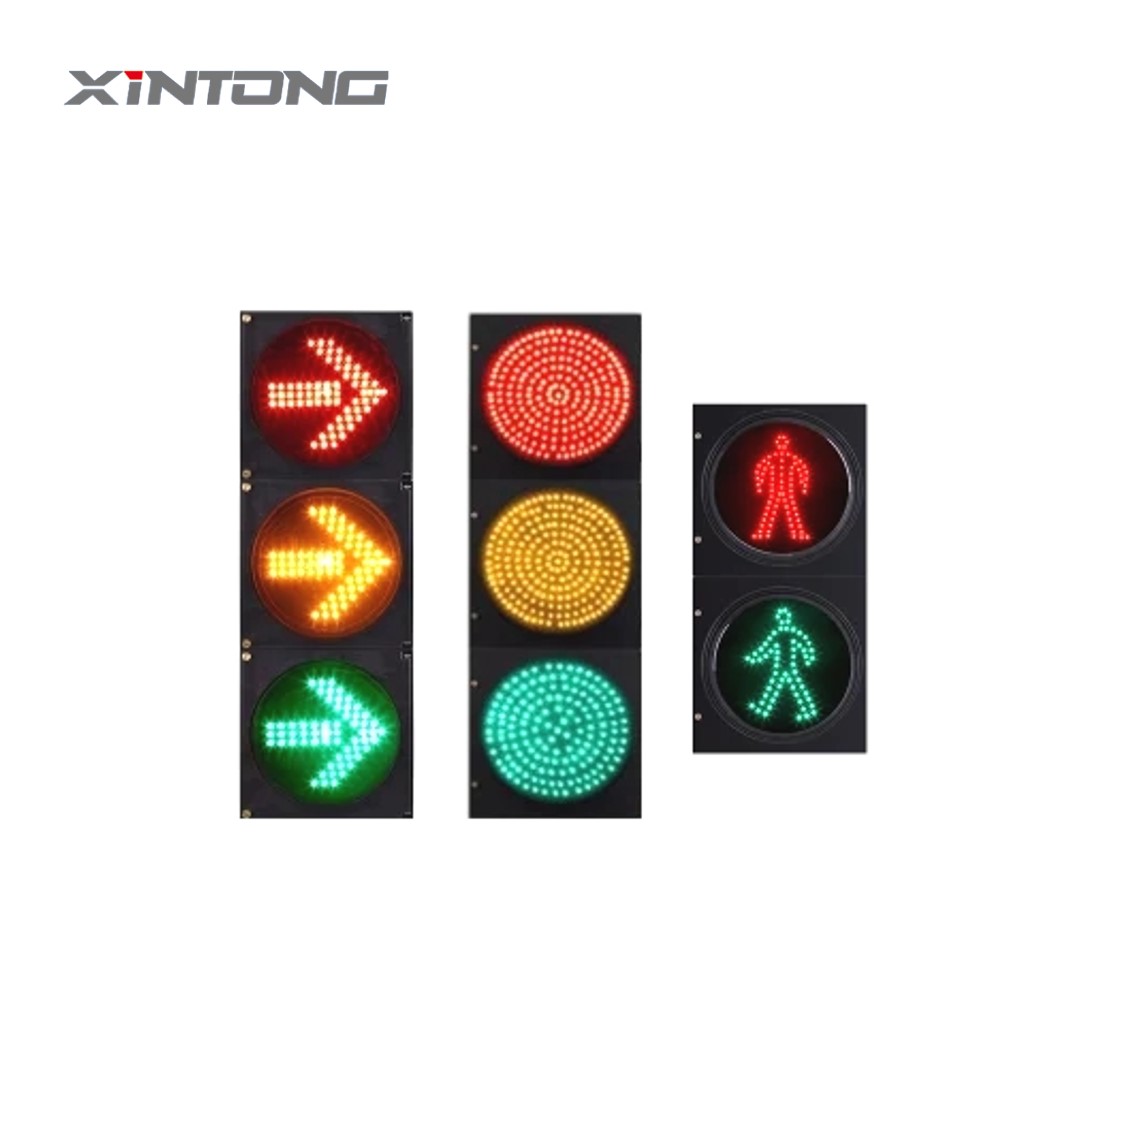 Triple right turn traffic lights